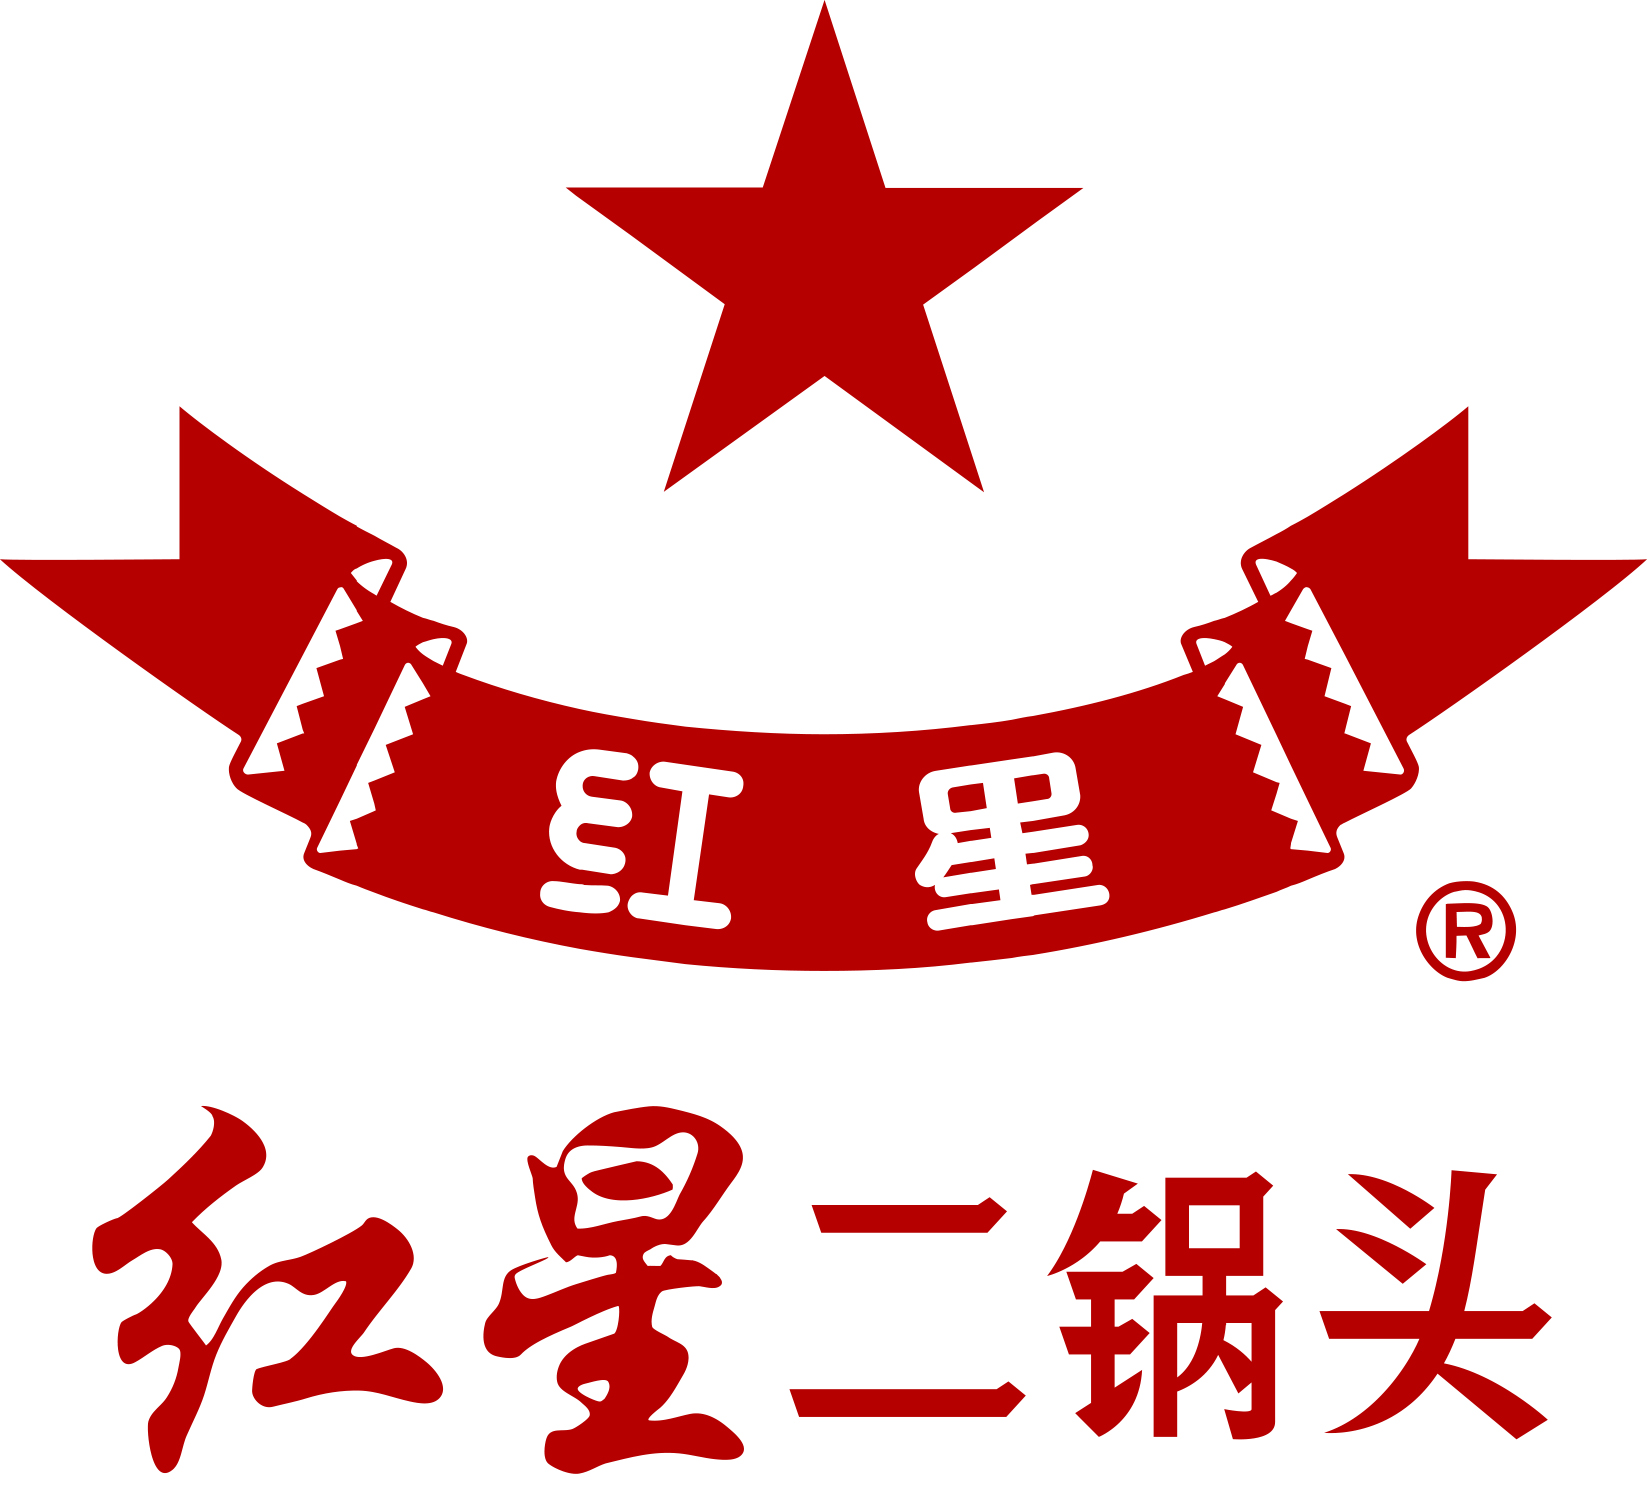 Beijing Red Star Co., Ltd.